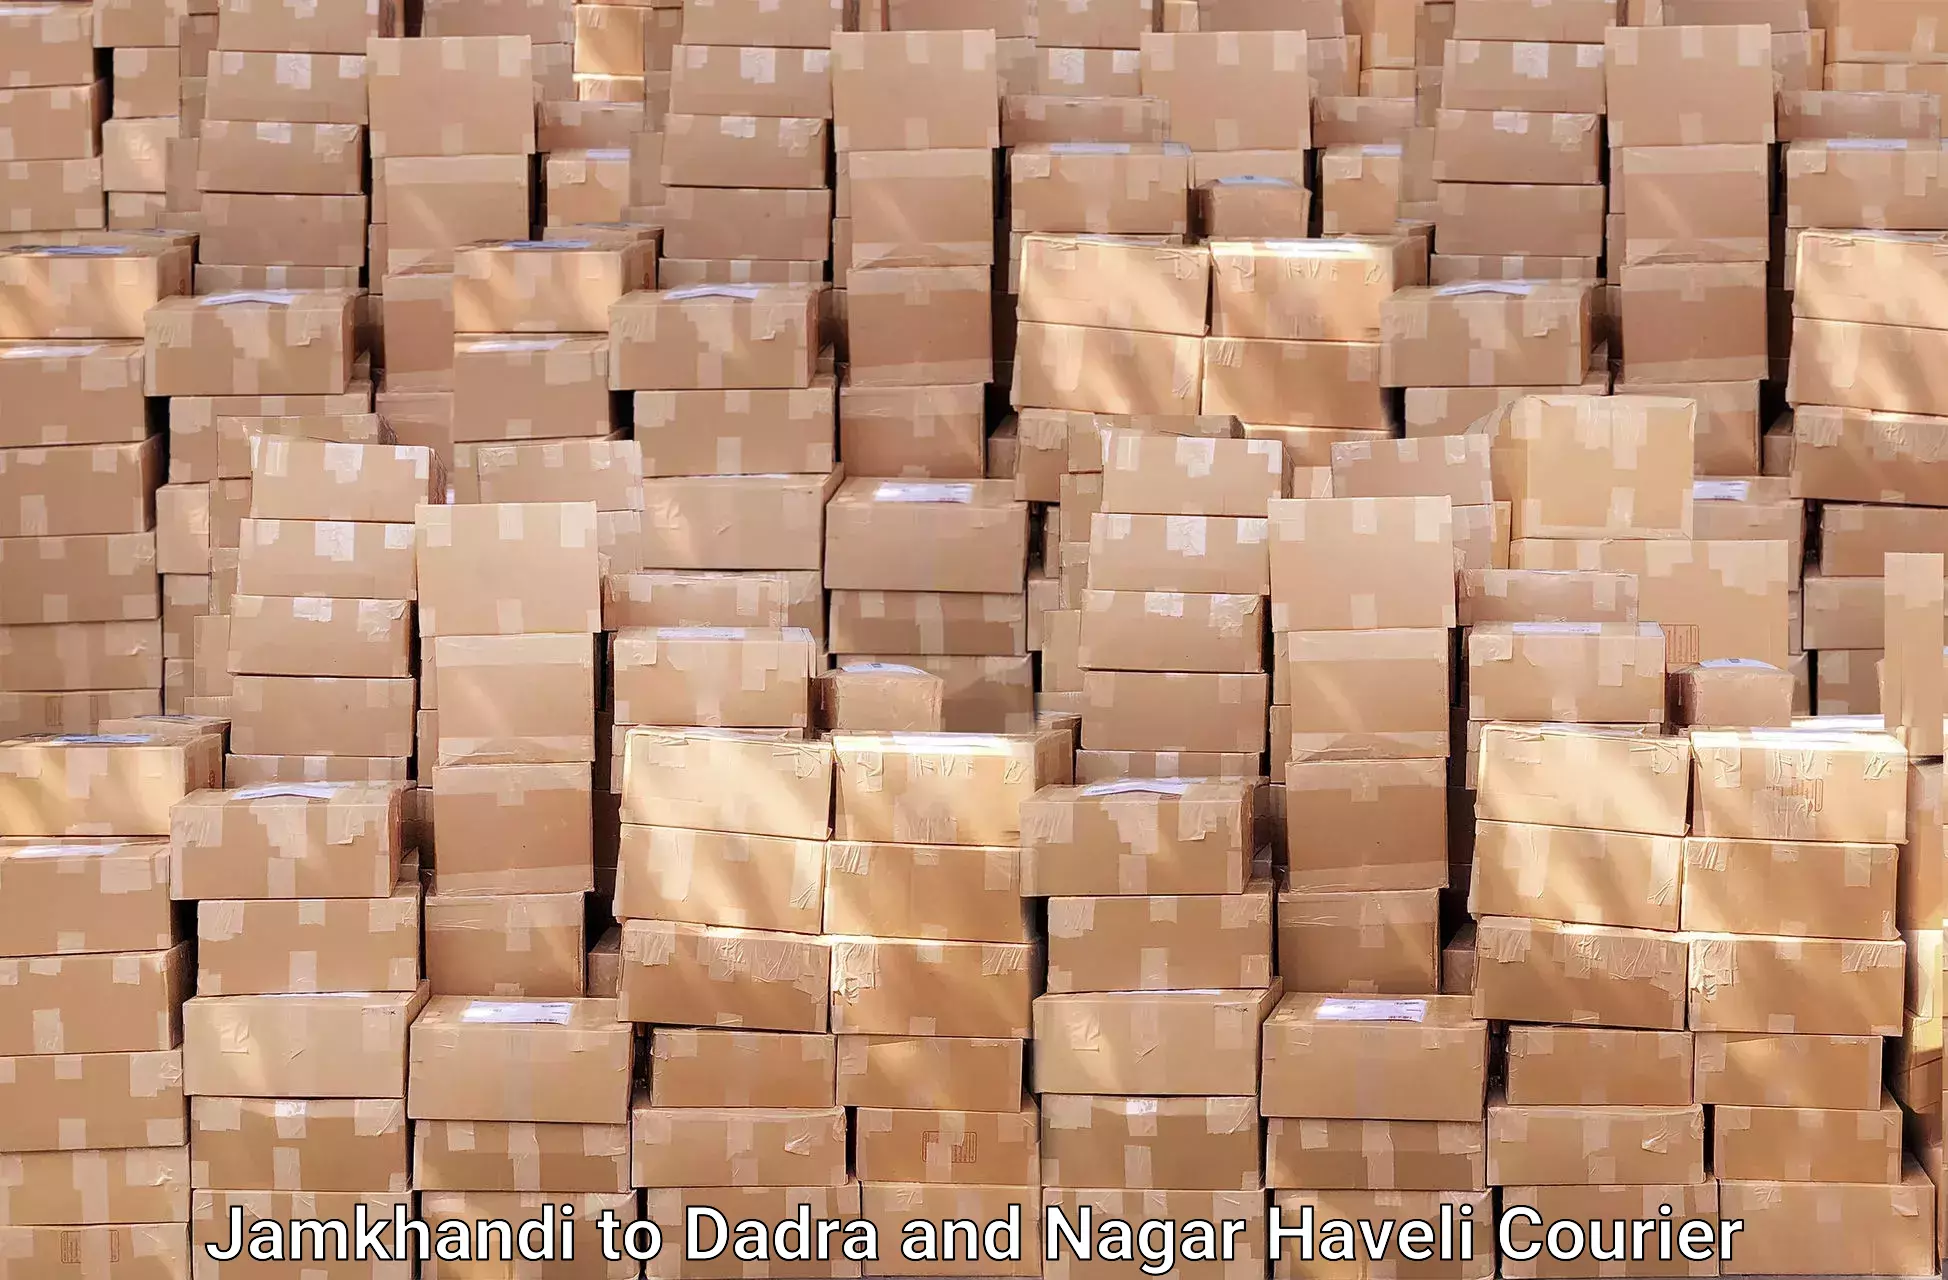 Quality household movers Jamkhandi to Dadra and Nagar Haveli